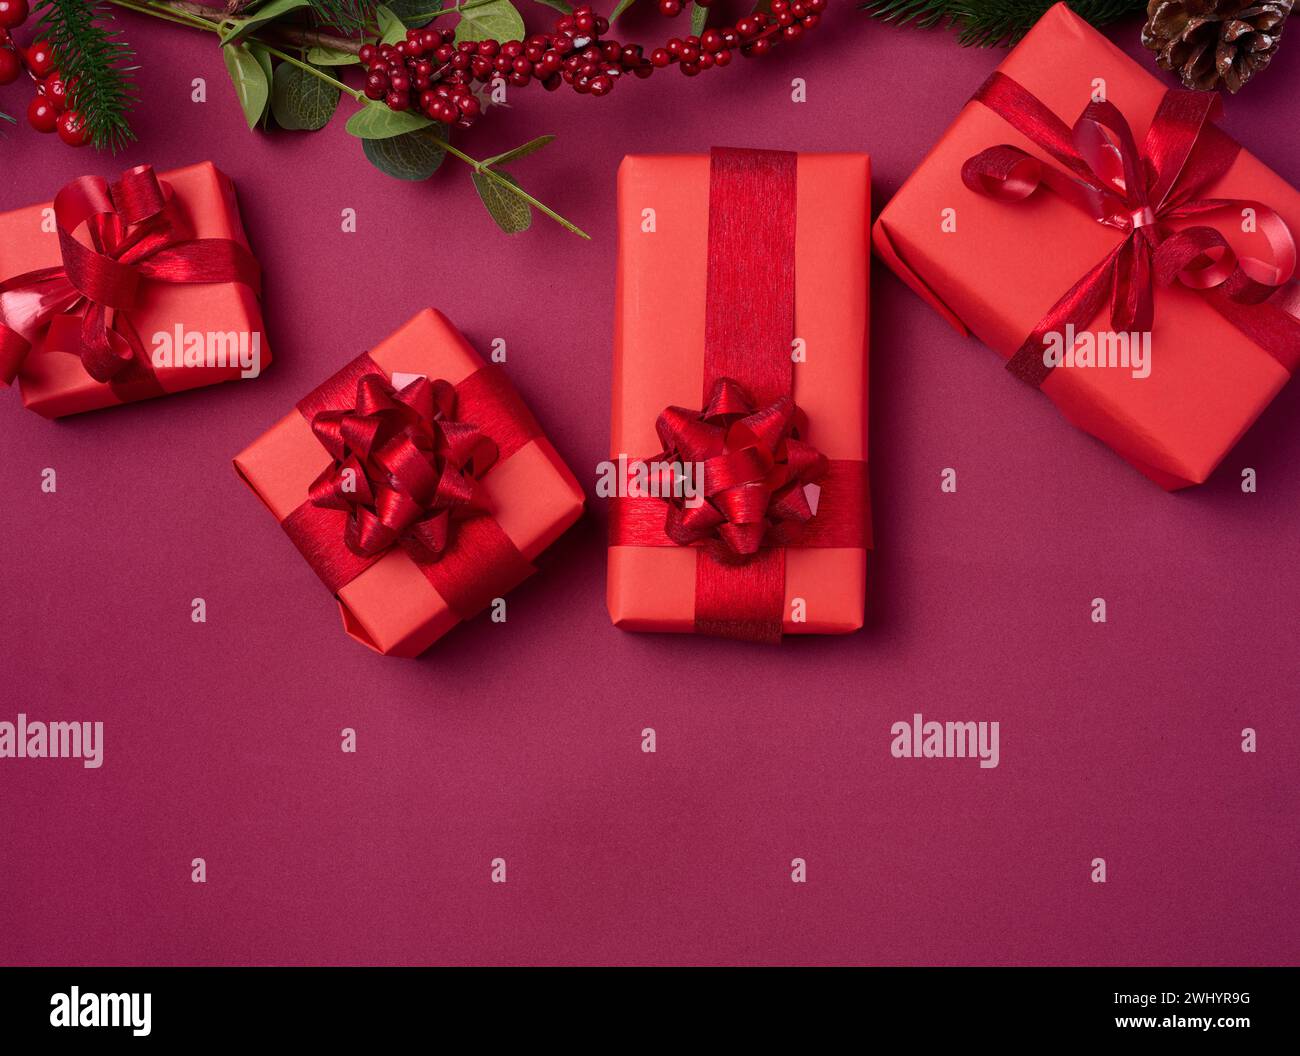 Décor de Noël, cadeaux enveloppés dans du papier rouge sur un fond rouge, vue de dessus Banque D'Images